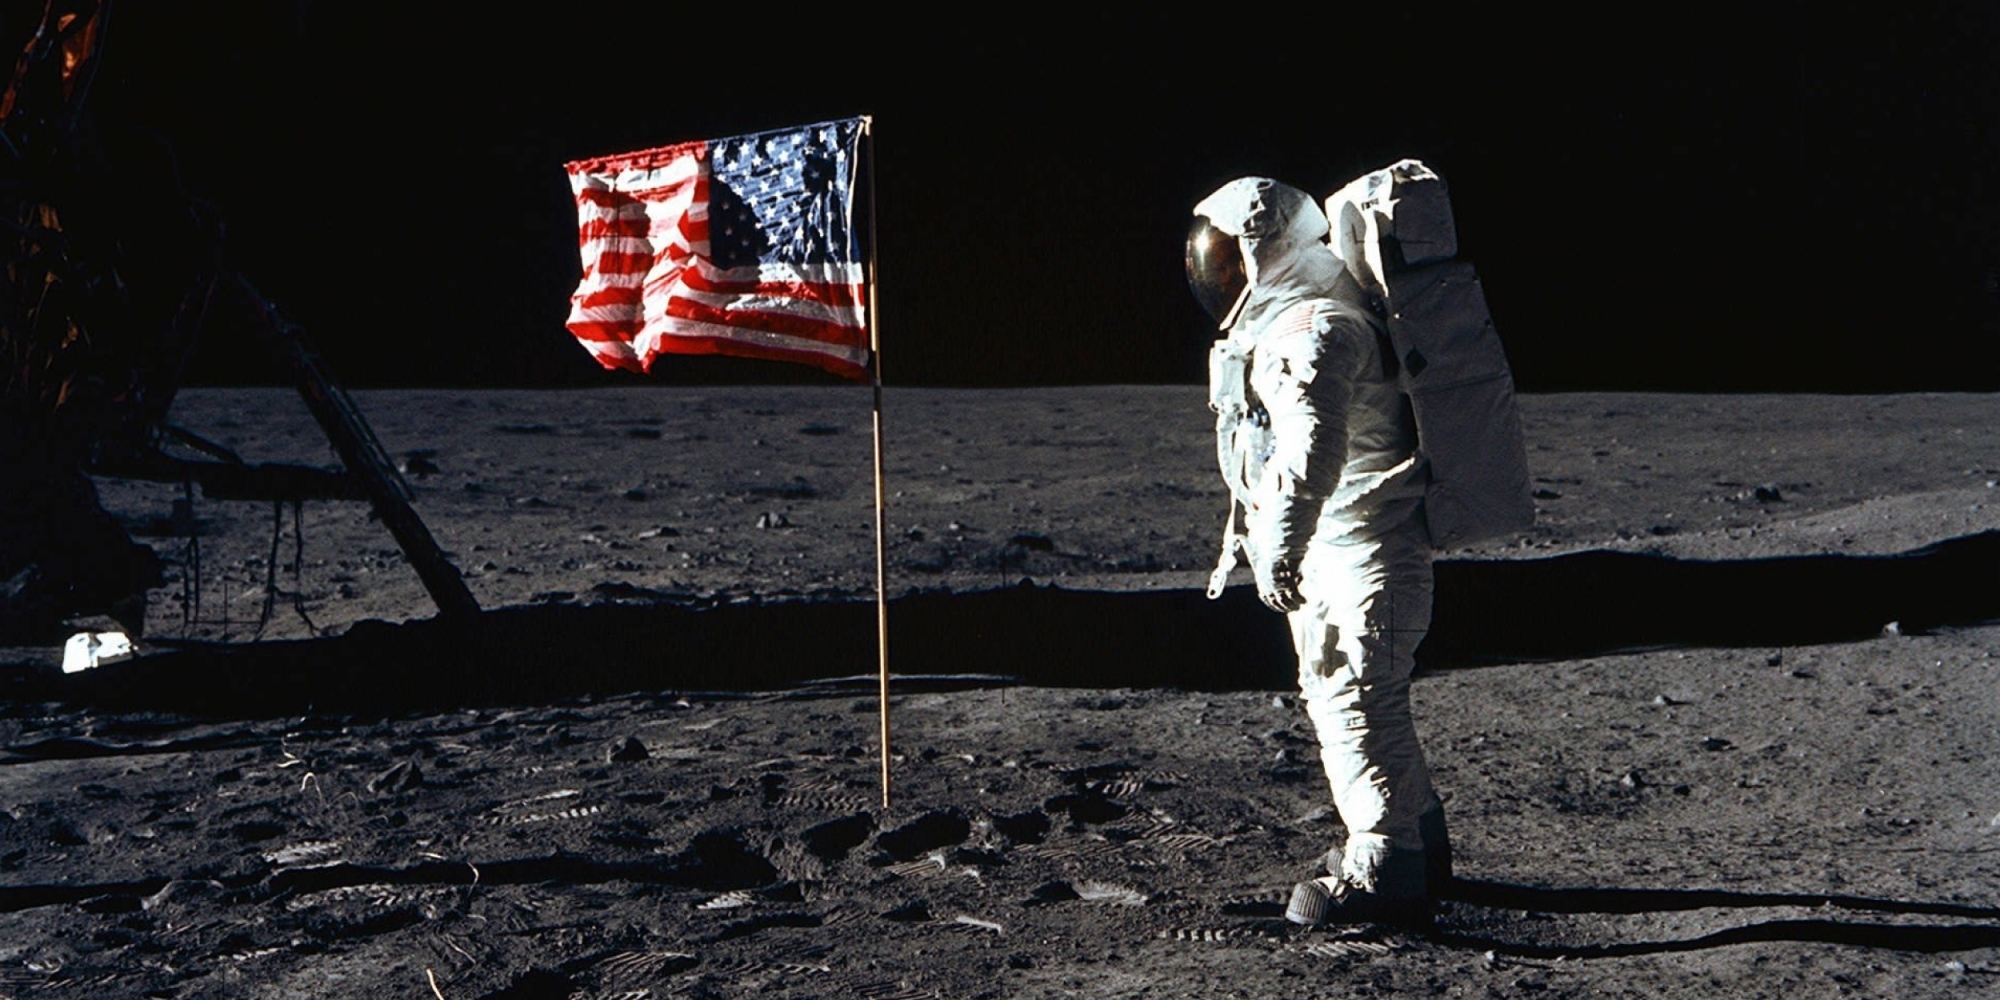 "Apollo 11", documentaire sorti en 2019, retrace l'histoire des premiers pas de l'Homme sur la Lune.